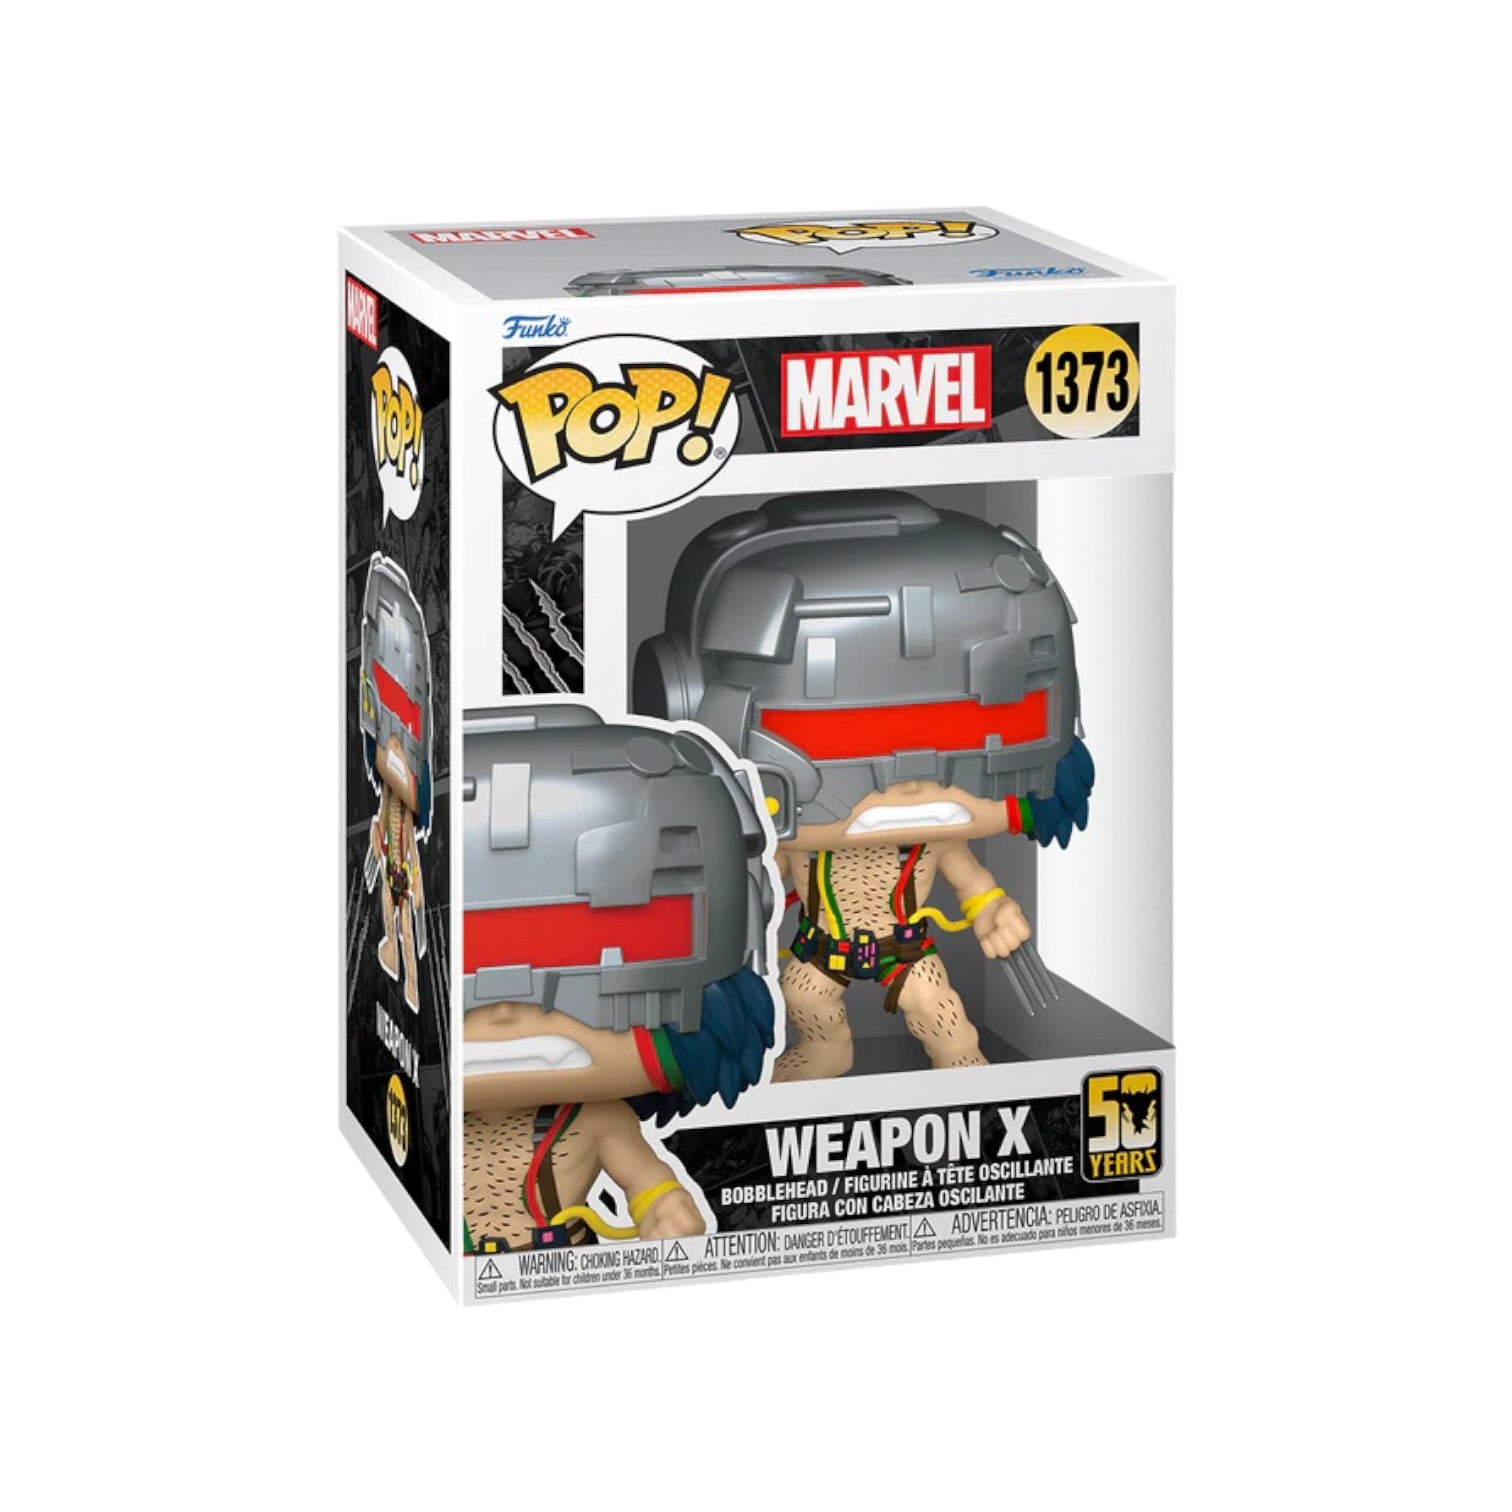 Weapon X #1373 Funko Pop! Wolverine 50th - PREORDER